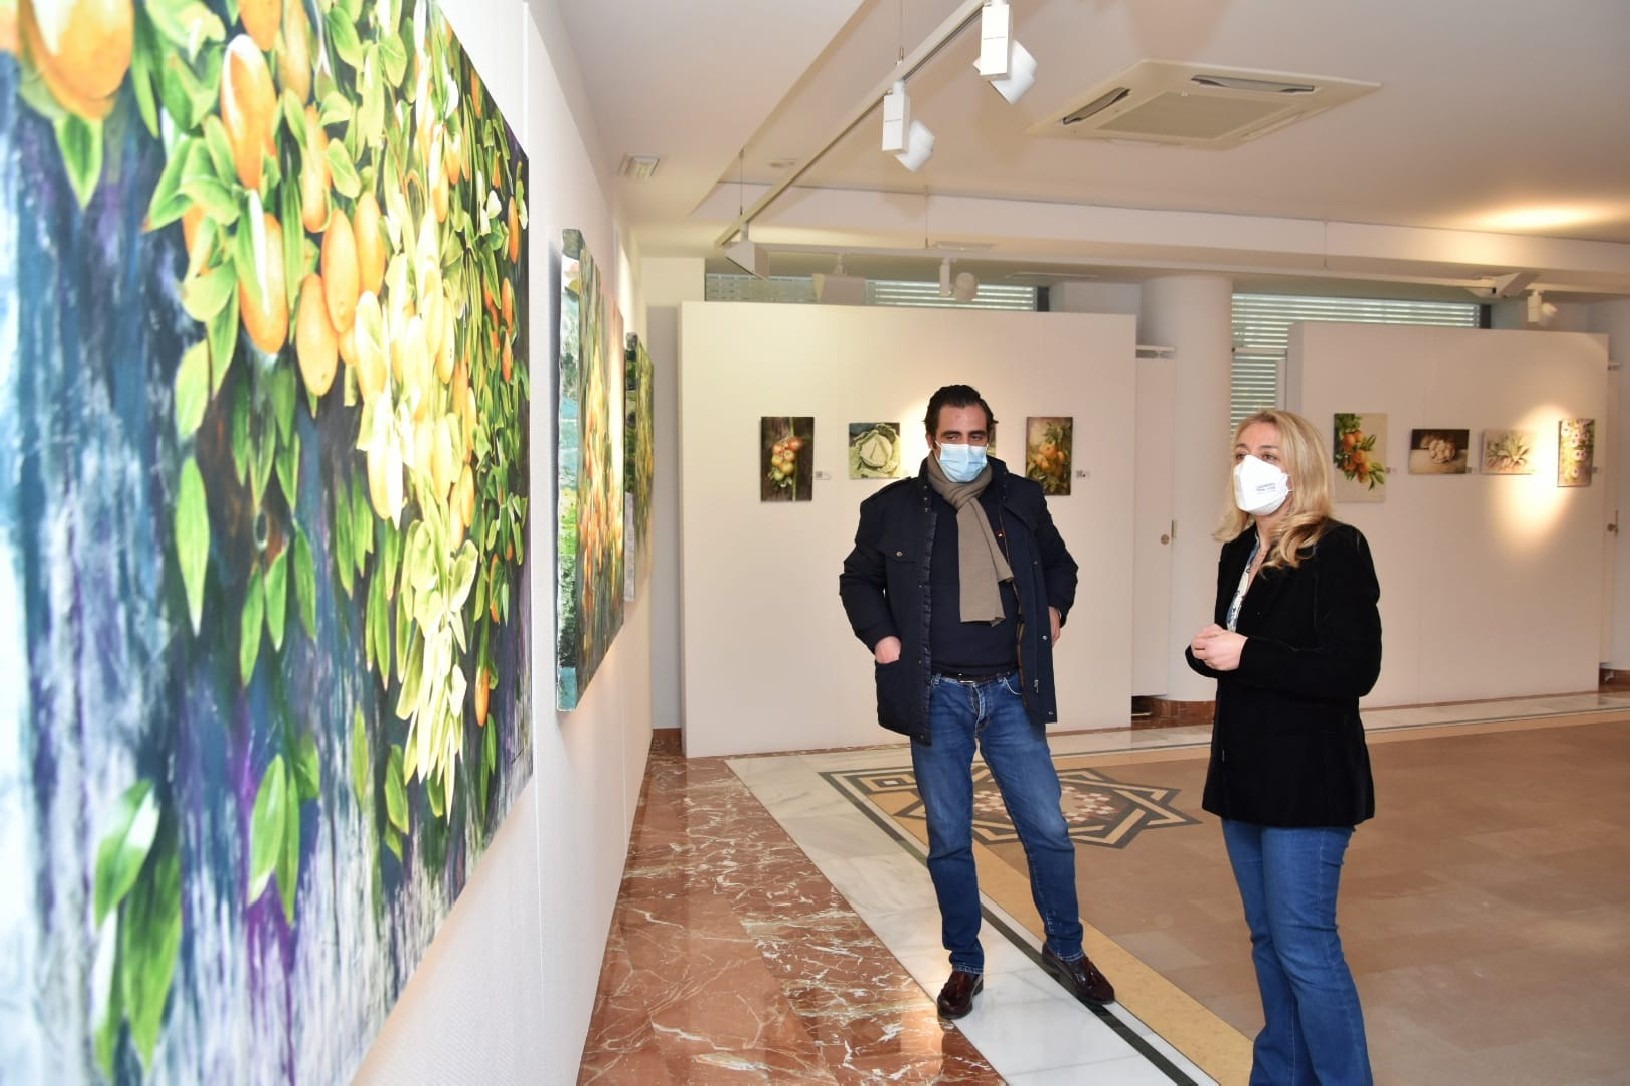 La Concejalía de Cultura de Lorca organiza “Pinta lo que veas, pinta lo que sientas”, una clase magistral con el artista José Miguel Muñoz